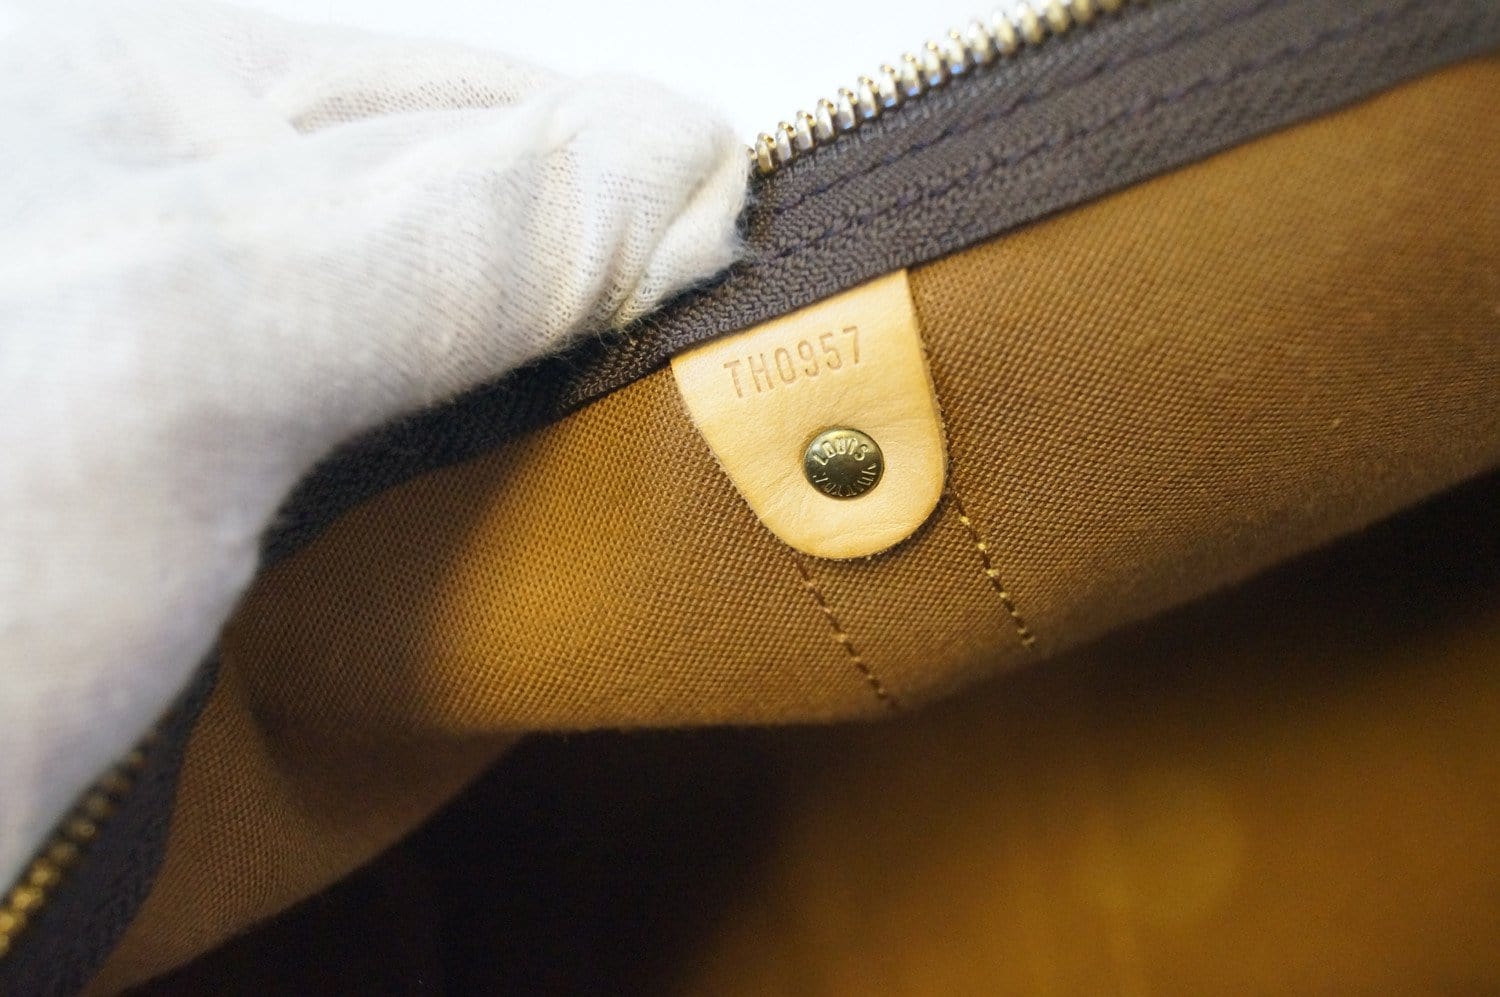 Handbags Louis Vuitton Louis Vuitton Monogram Savanna Keepall Bandouliere 45 Boston M54129 Auth 33473a